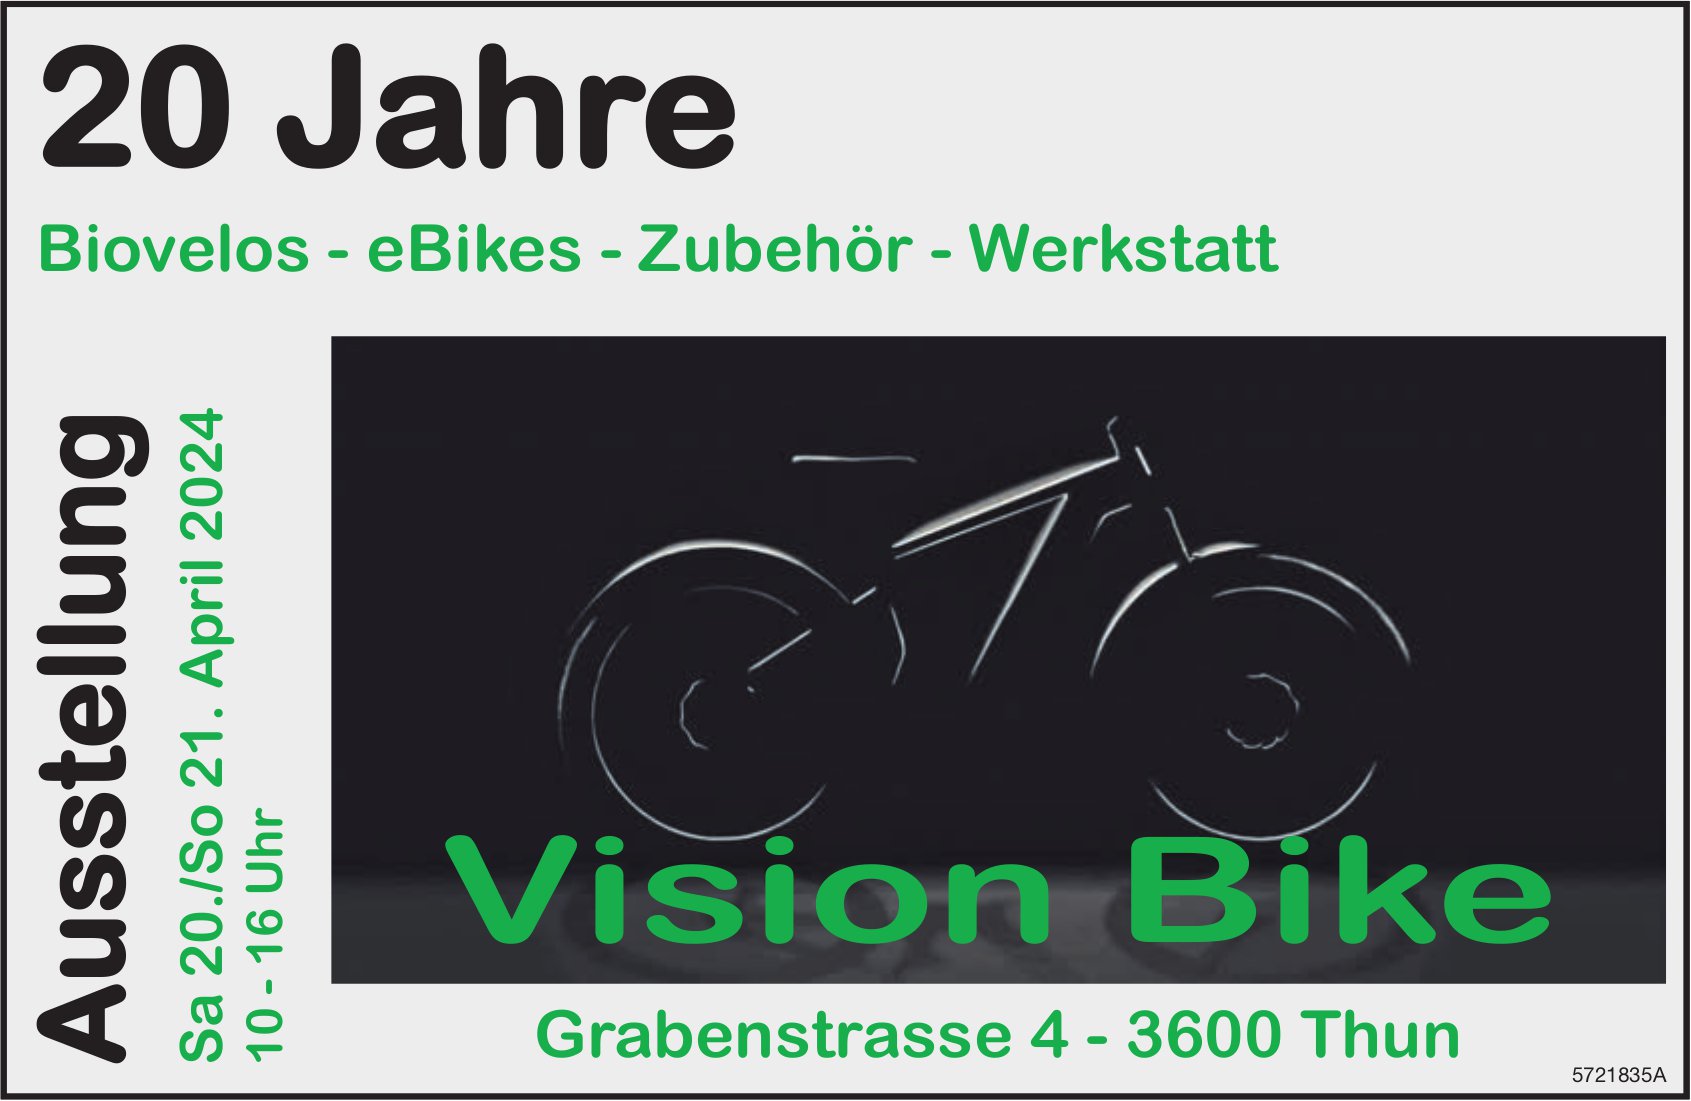 Ausstellung 20 Jahre, 20. + 21. April, Vision Bike, Thun